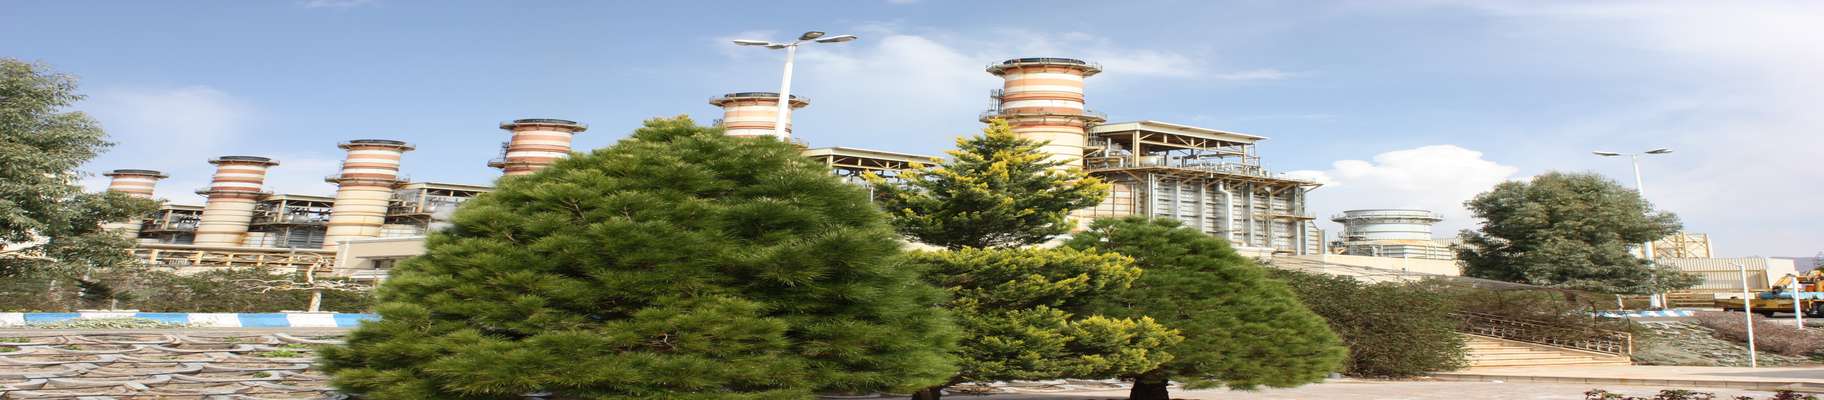 مدیرعامل نیروگاه شهیدسلیمانی اعلام کرد:  افزایش 10 درصدی تولید برق نیروگاه شهیدسلیمانی کرمان/ کاهش 43 درصدی خروج اضطراری واحدهای نیروگاه در پیک تابستان